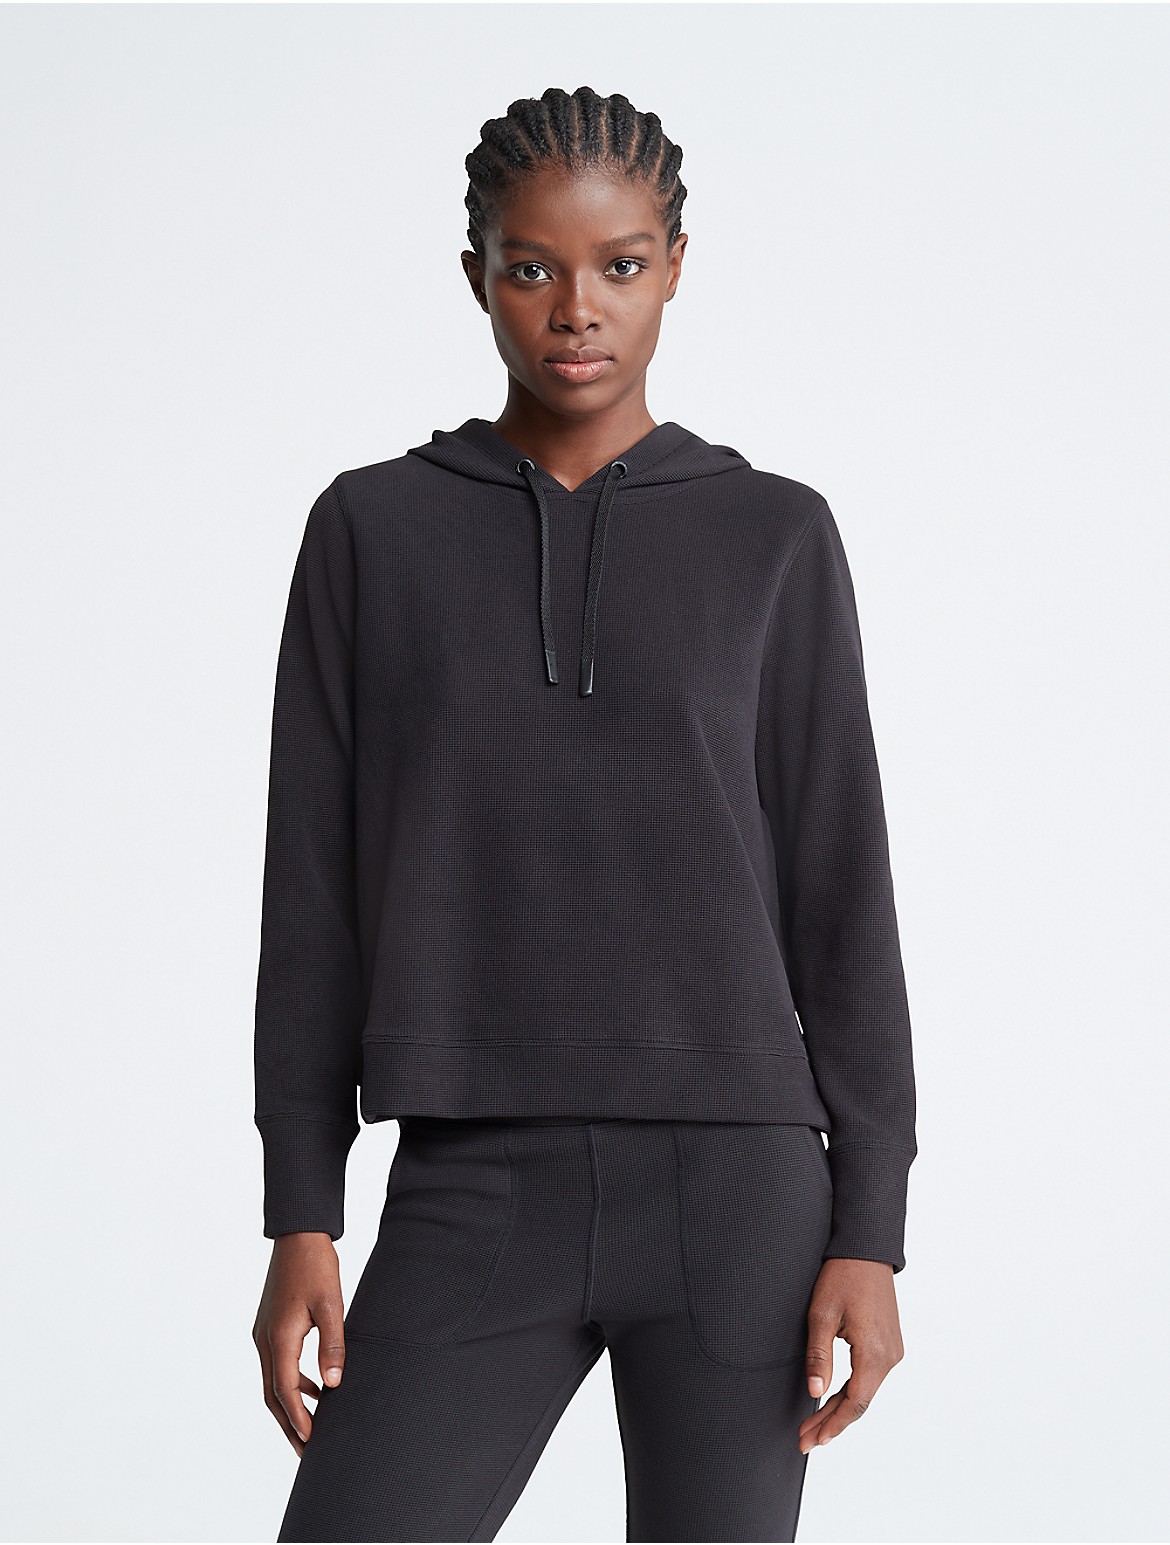 Calvin Klein Women's Performance Long Sleeve Hoodie - Black - L